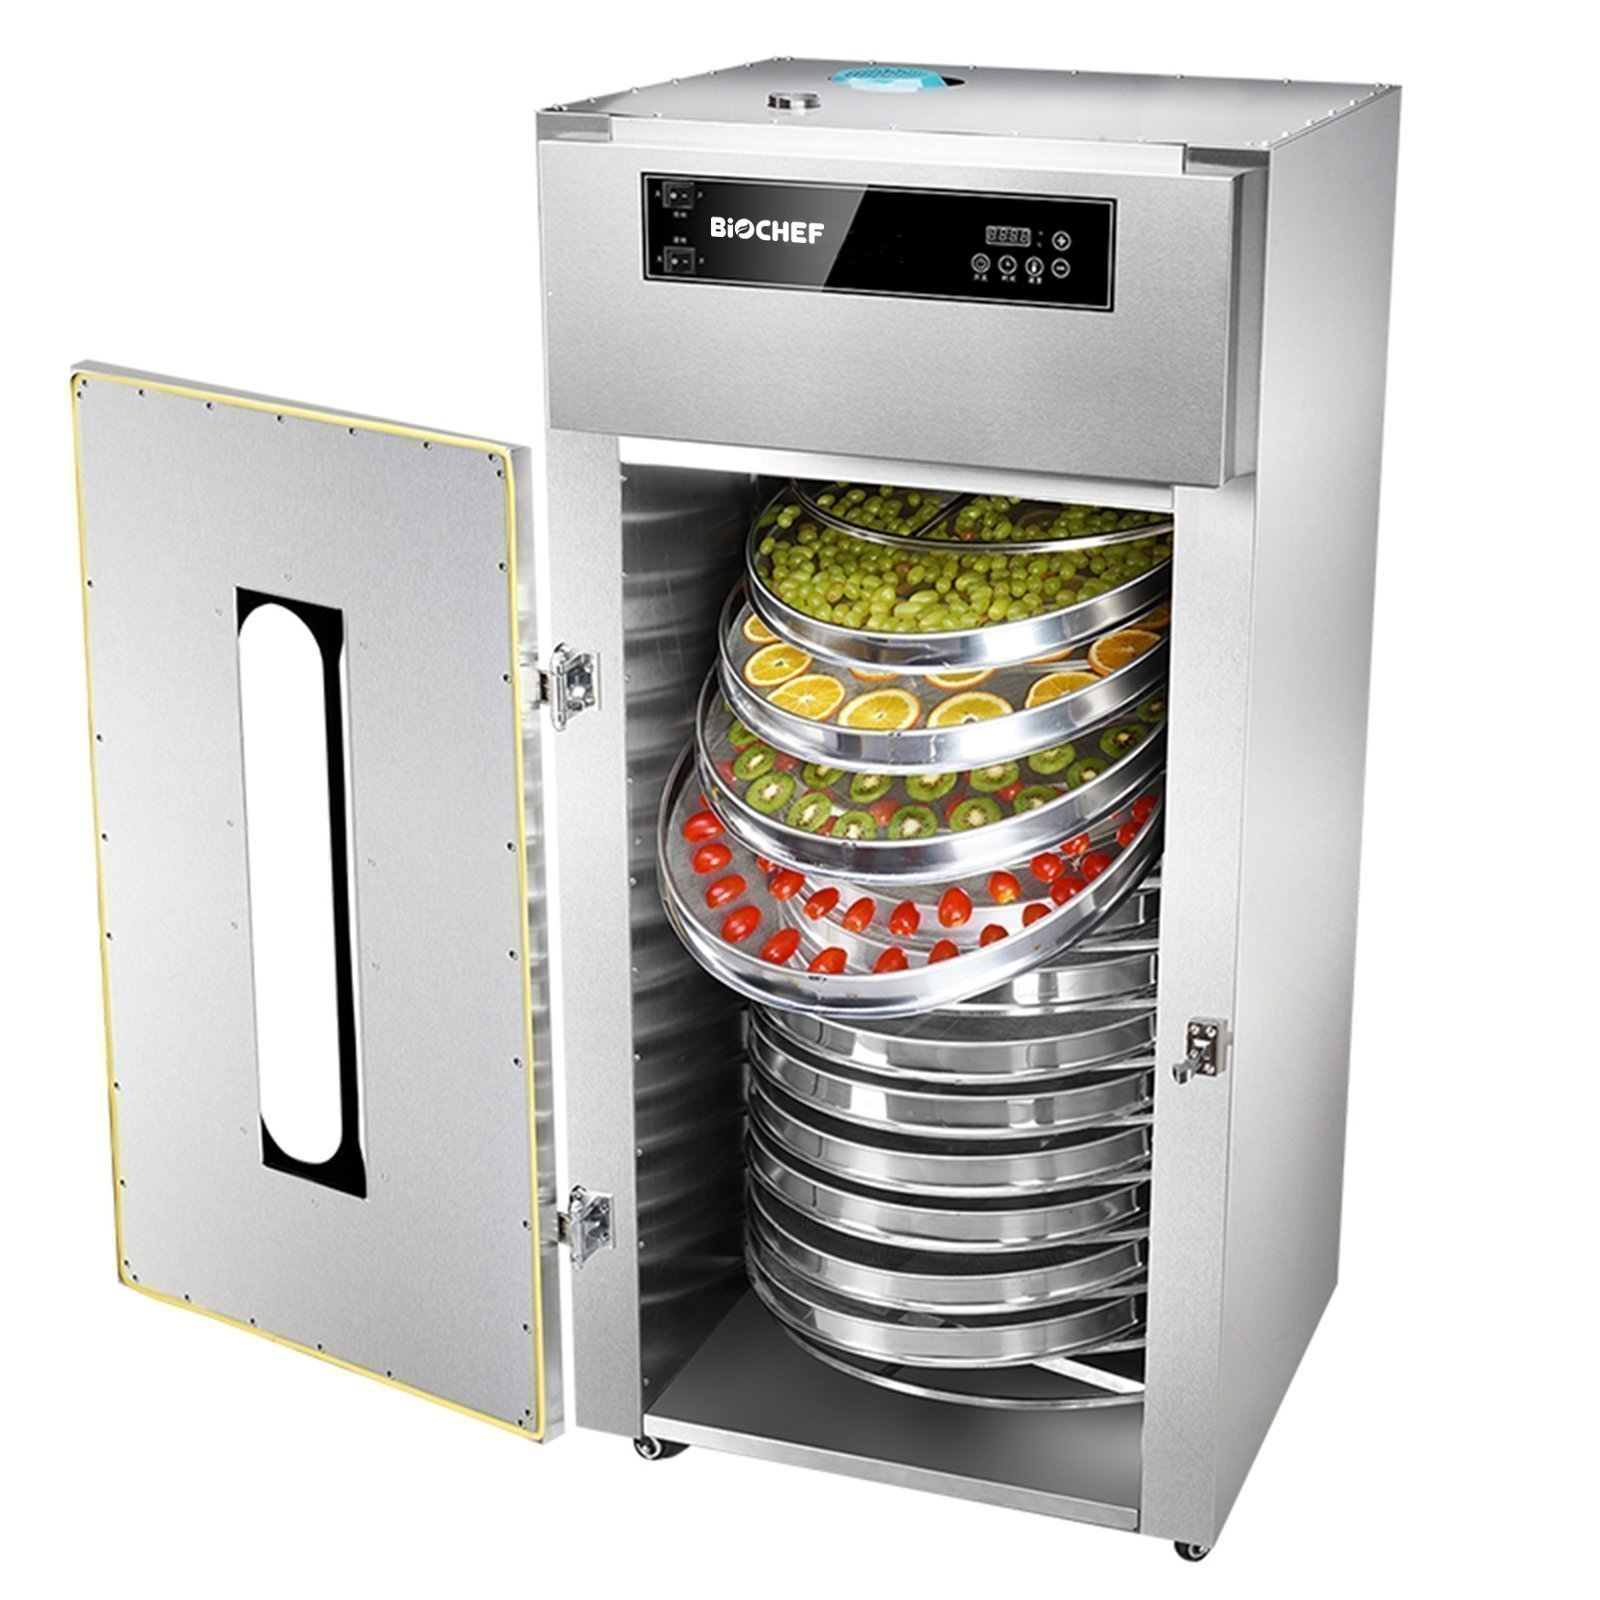 BioChef Commercial Rotating 15 Tray Food Dehydrator